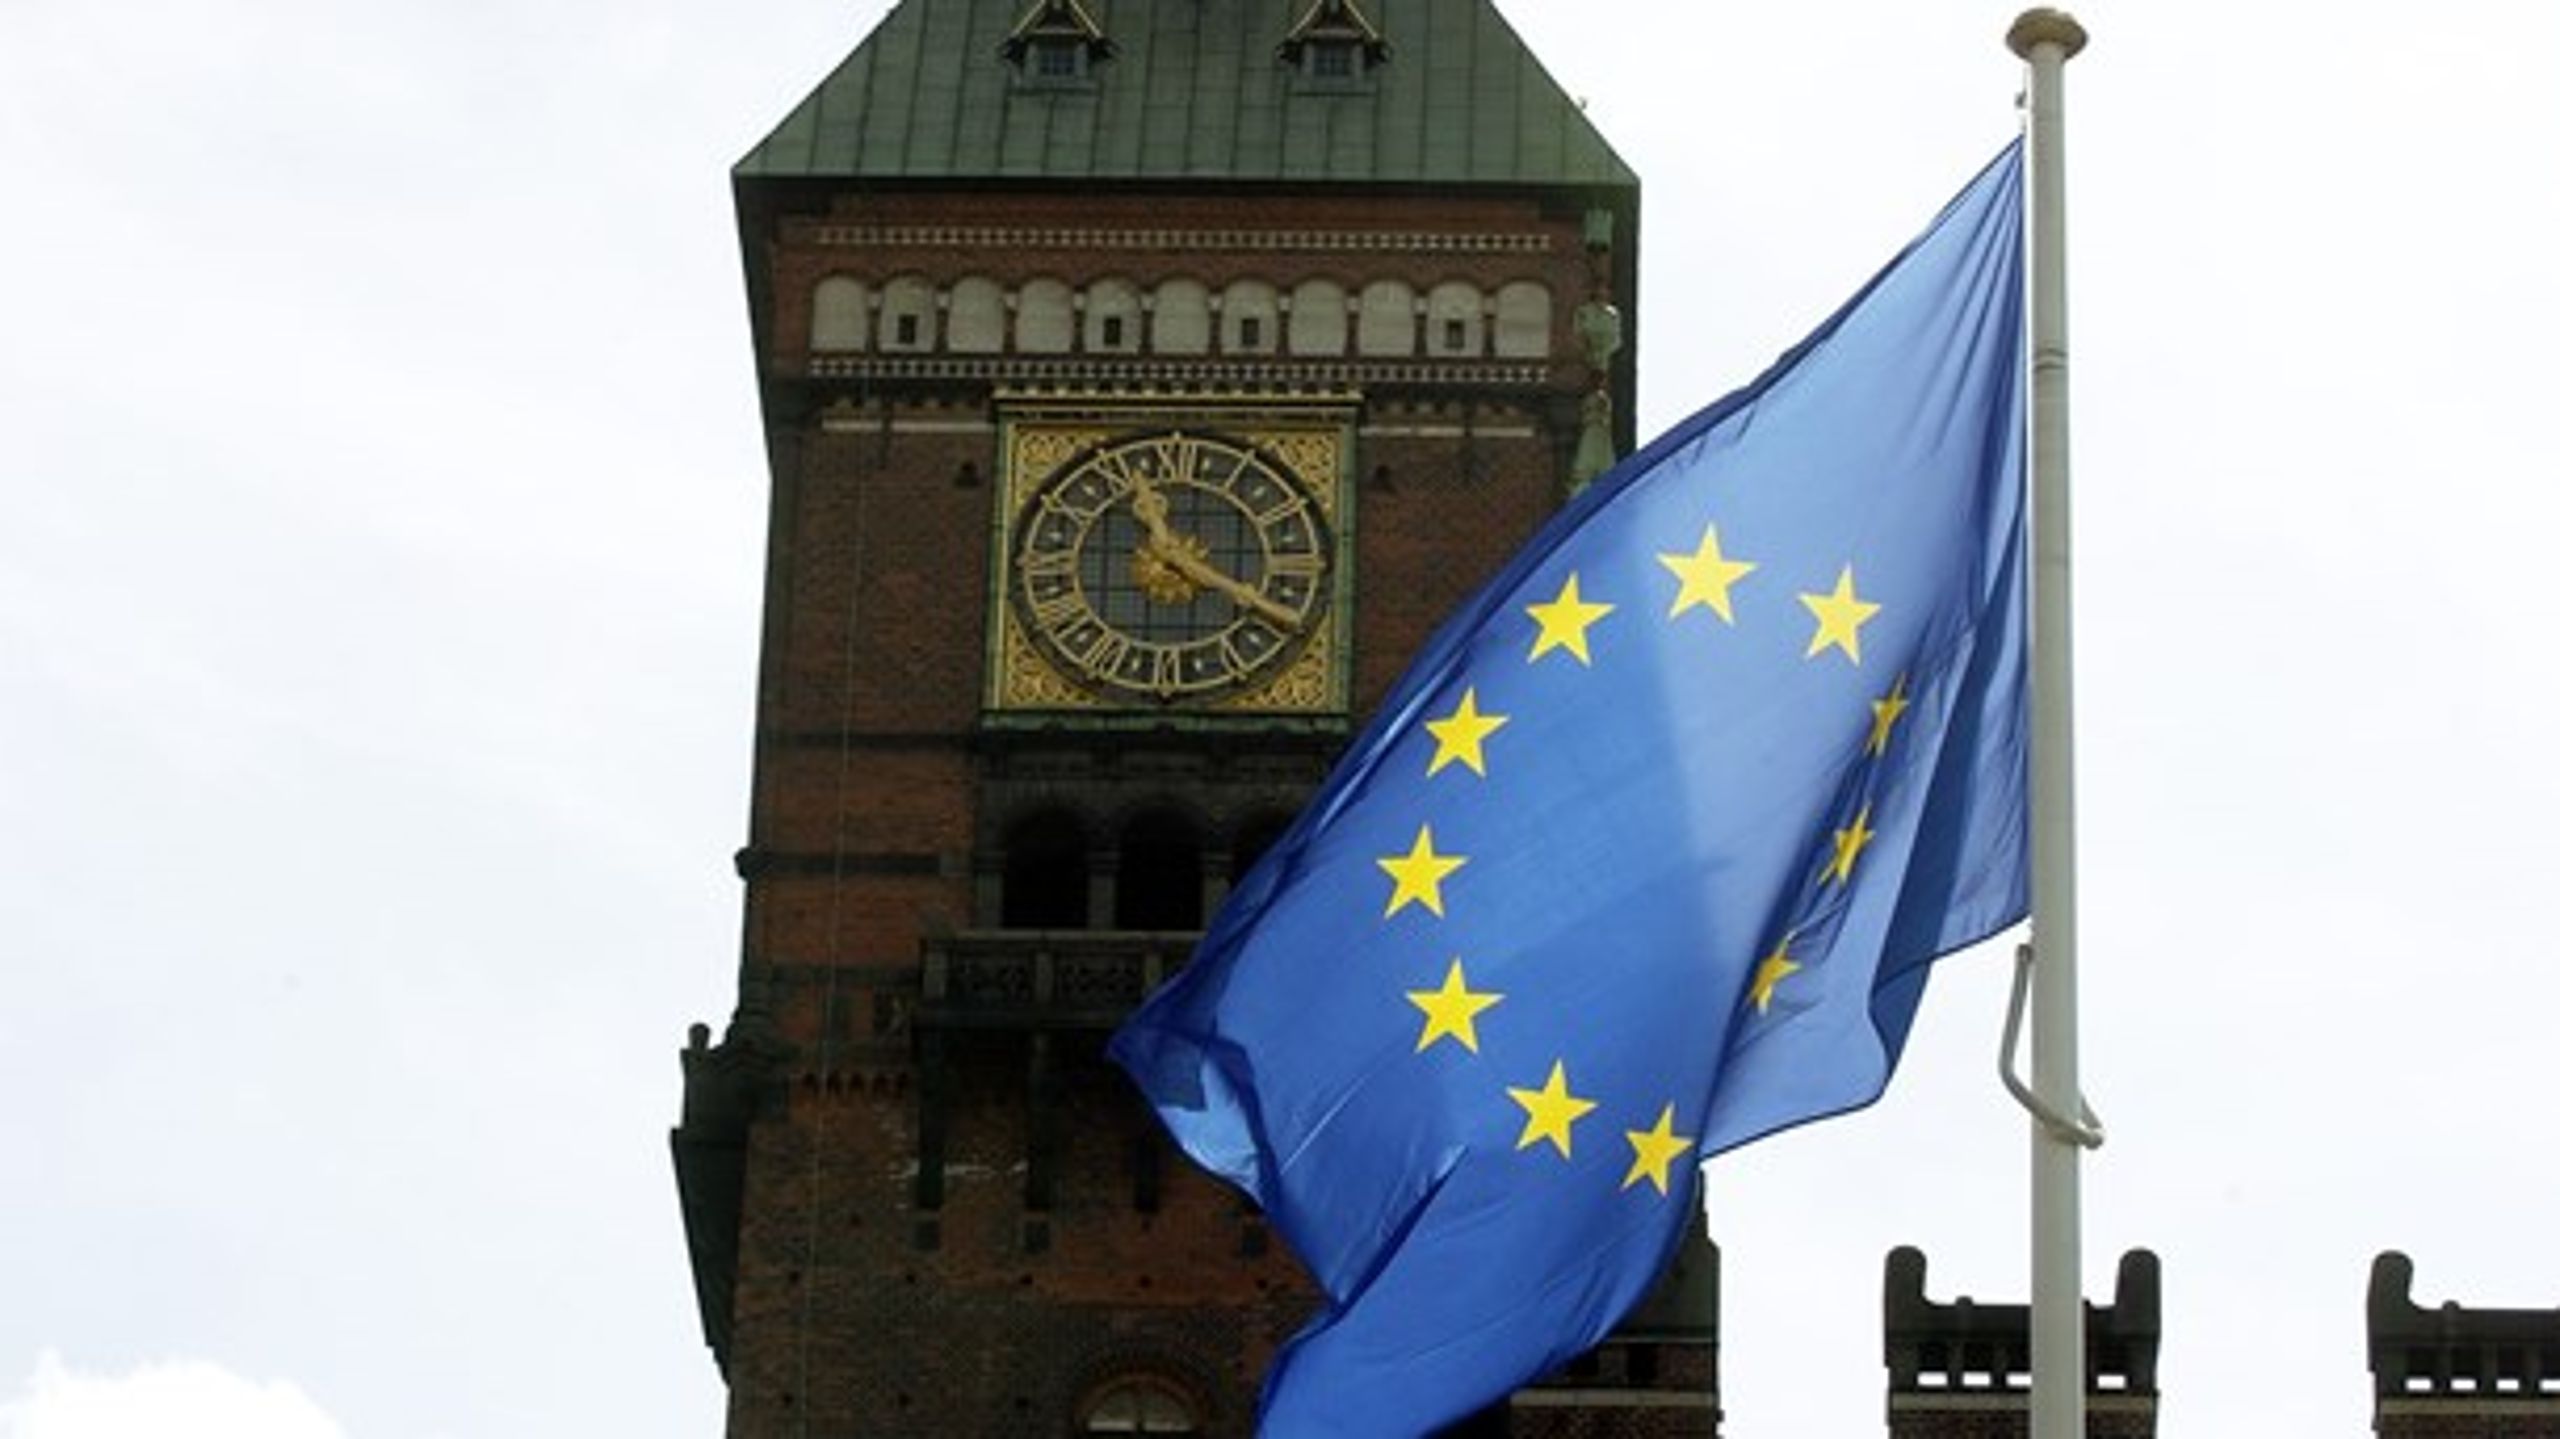 Andre lande ser ikke just Danmark som en bannerfører i EU-samarbejdet.